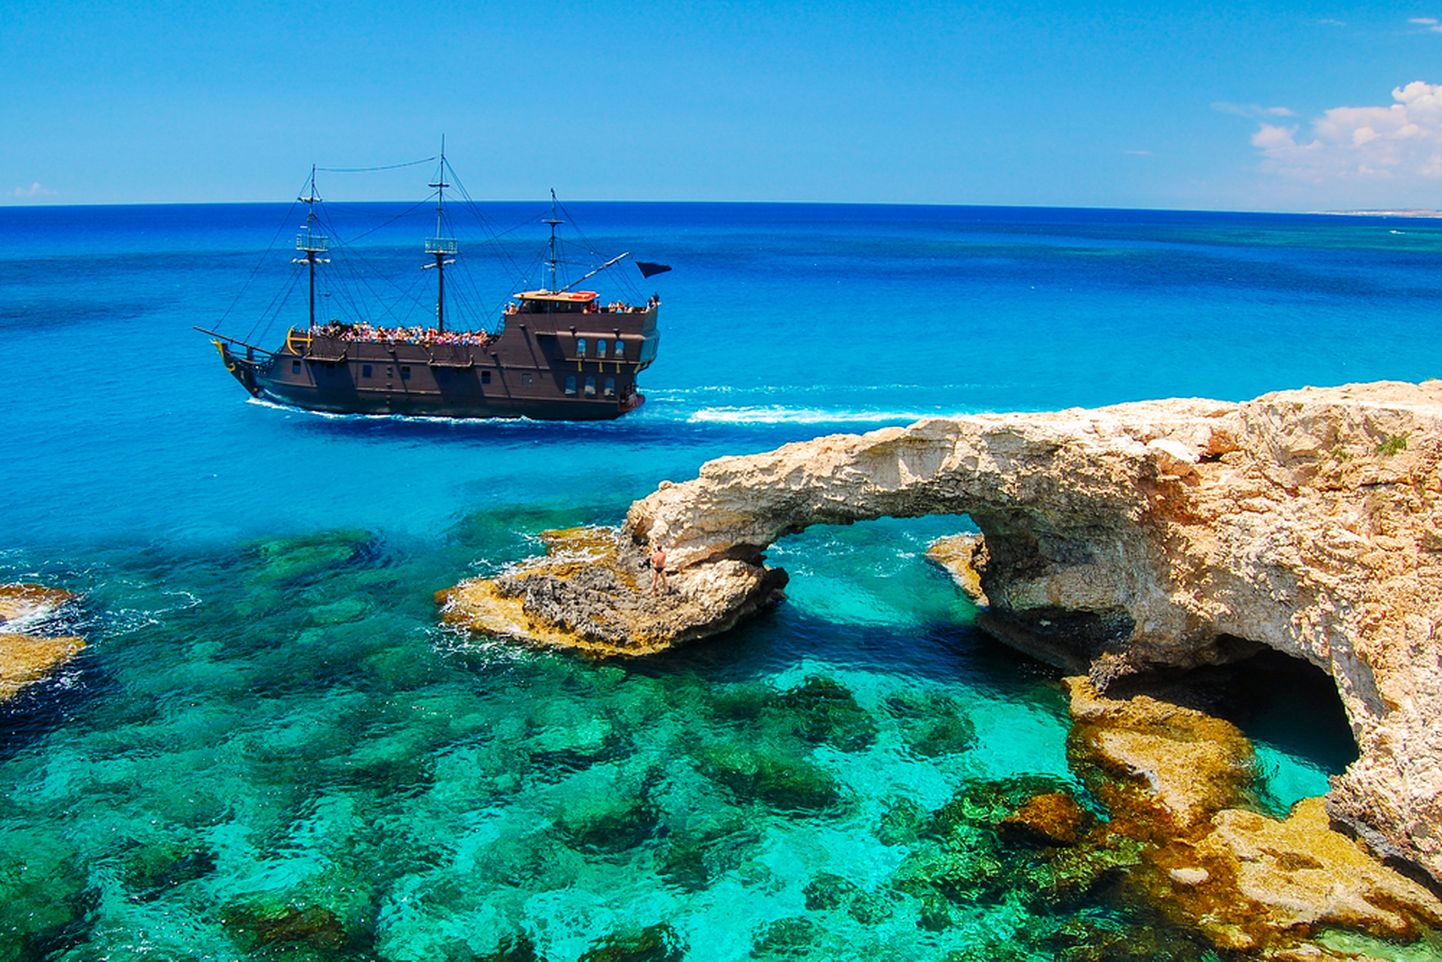 Järgne helesinise laguuni kutsele ja naudi Küprose kaunist kultuuri!